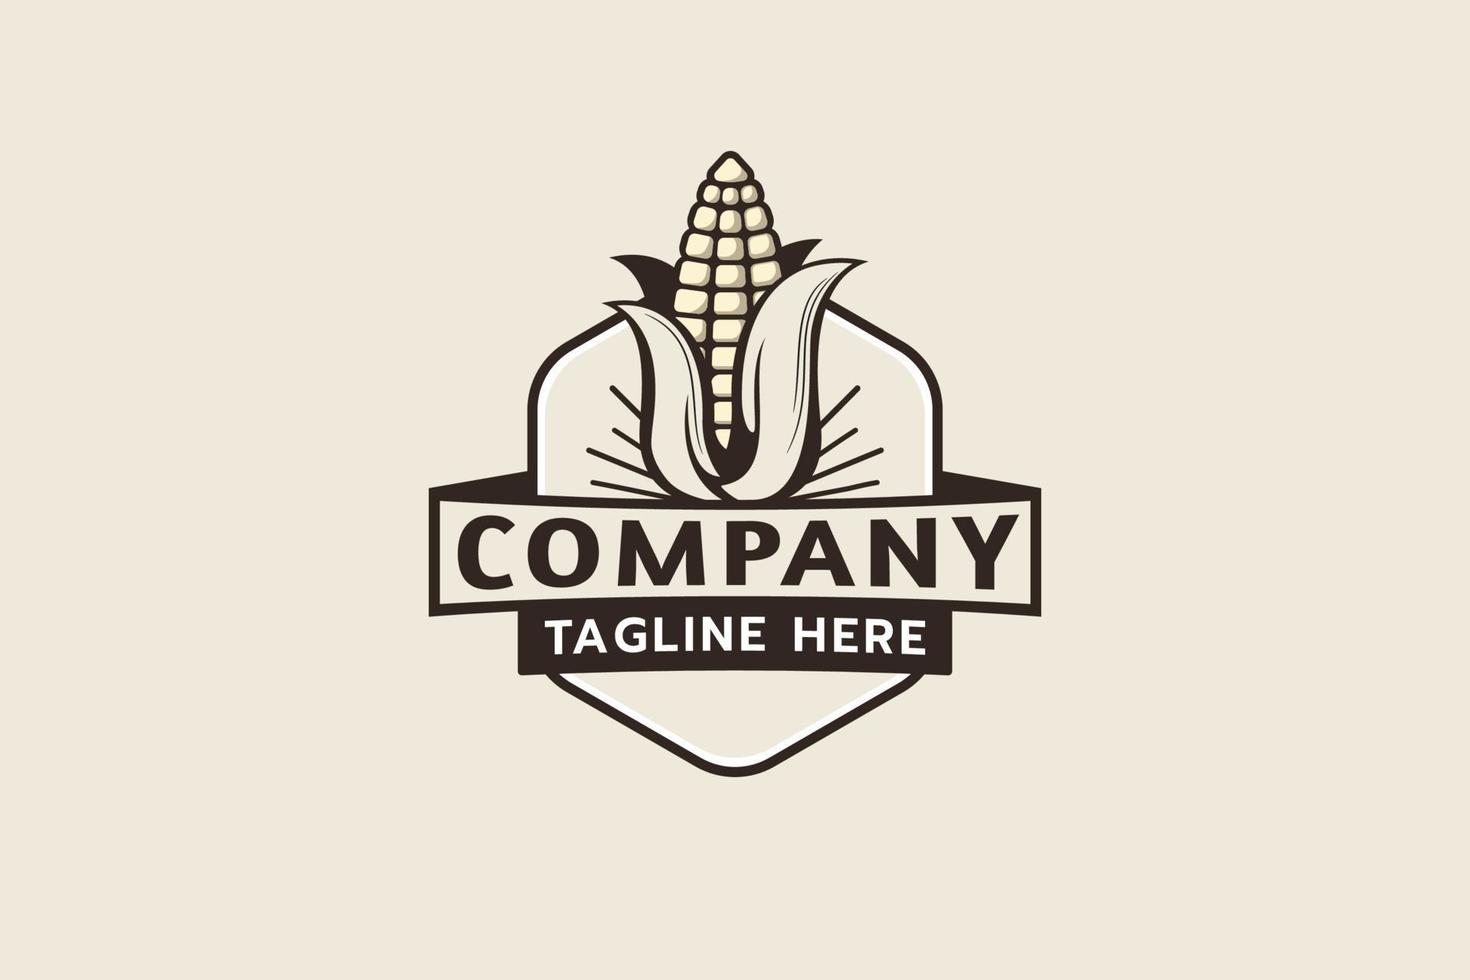 maïs logo met zeshoek embleem vorm in wijnoogst stijl voor ieder bedrijf vooral voor landbouw, oogst, landbouw, enz. vector